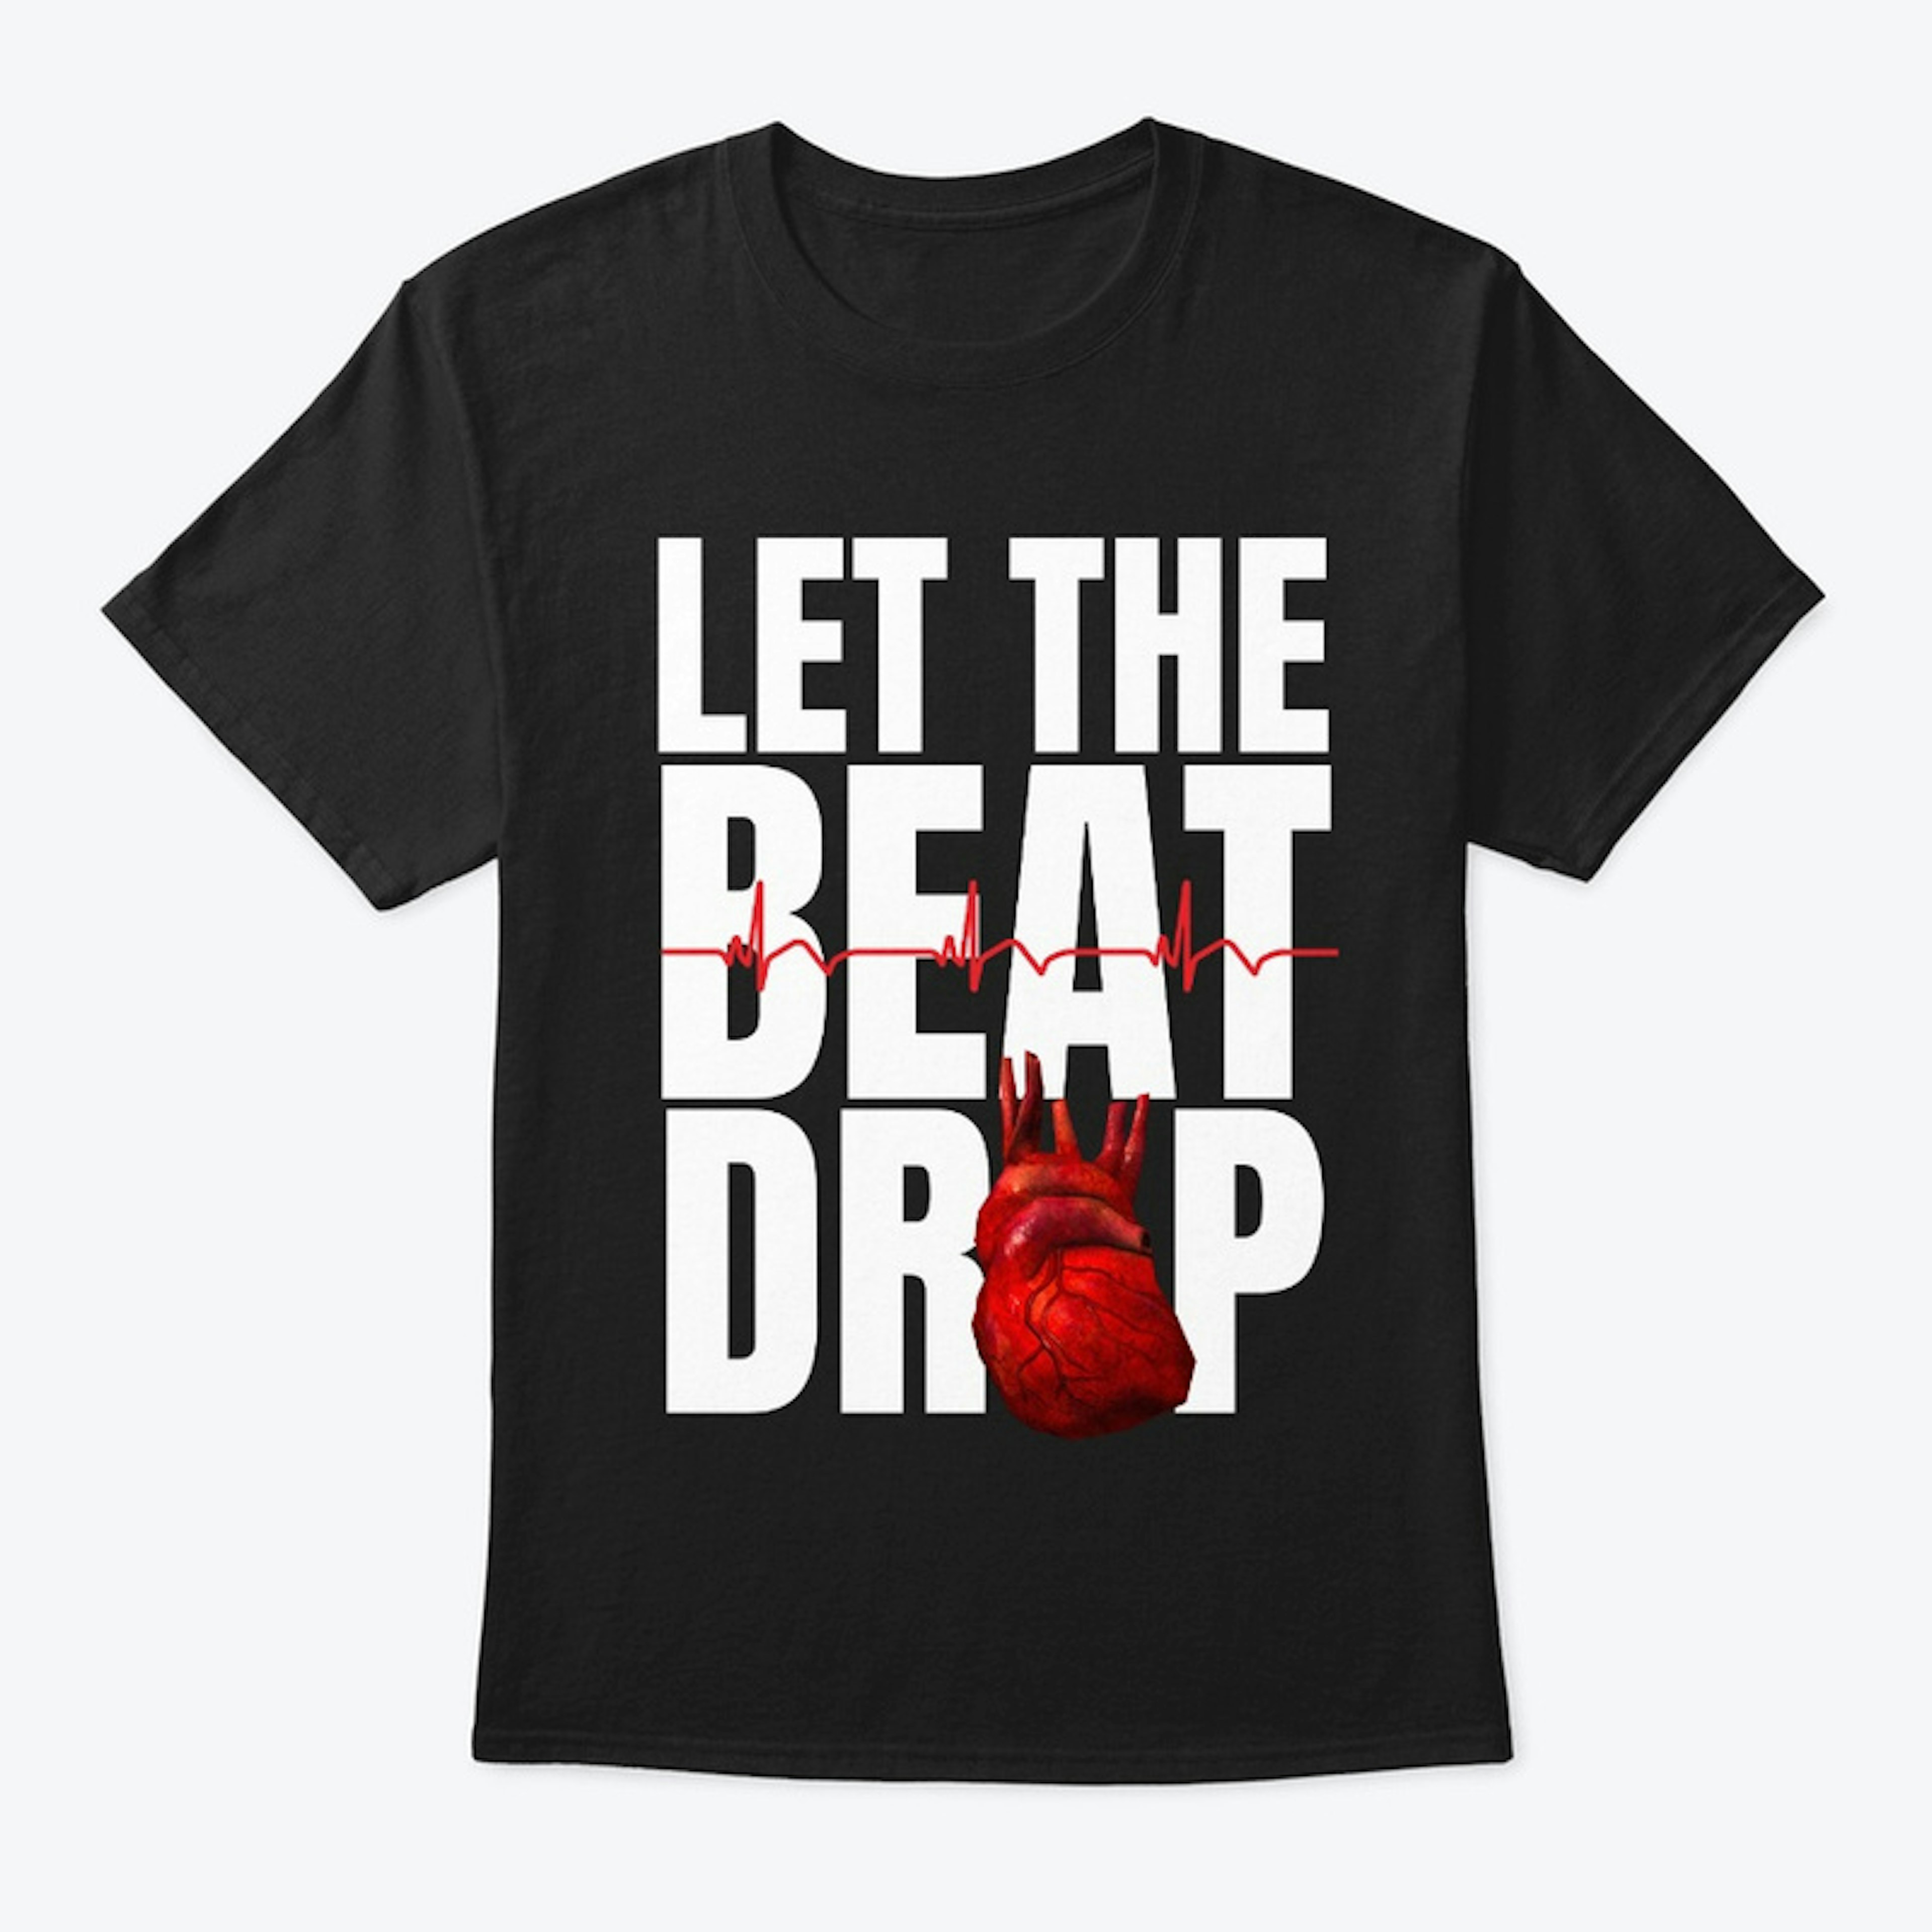 Let the beat drop Premium T-Shirt 